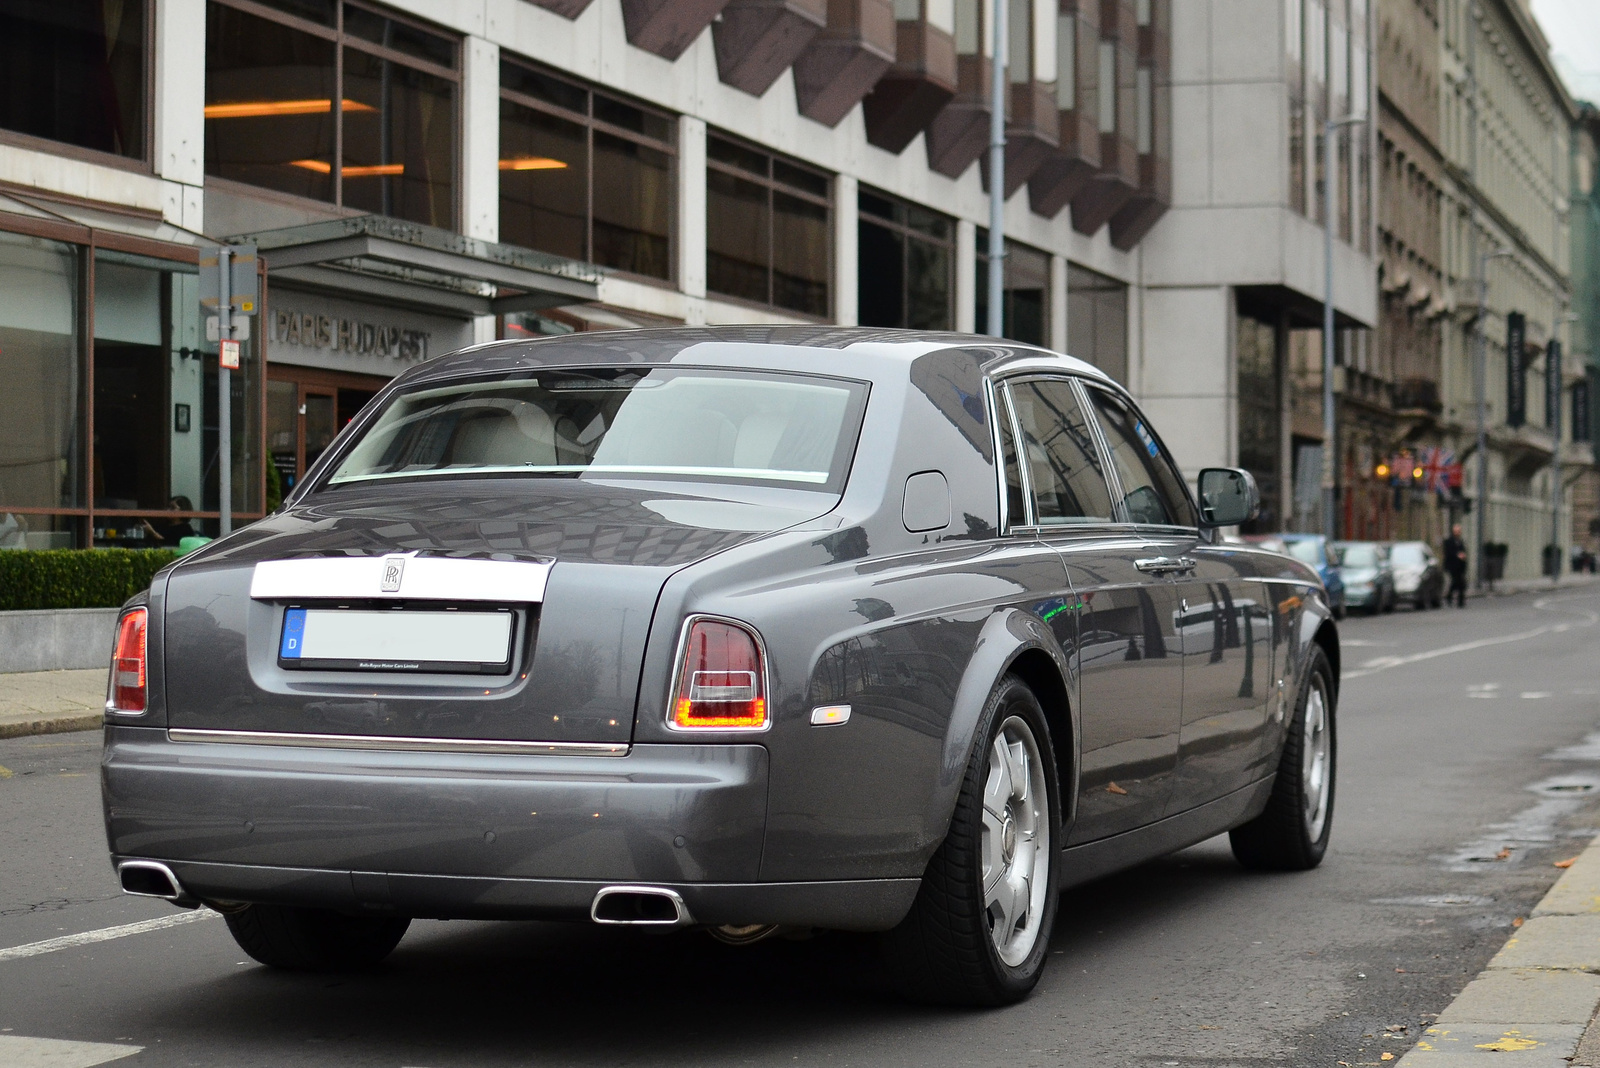 Rolls-Royce Pahntom Series II